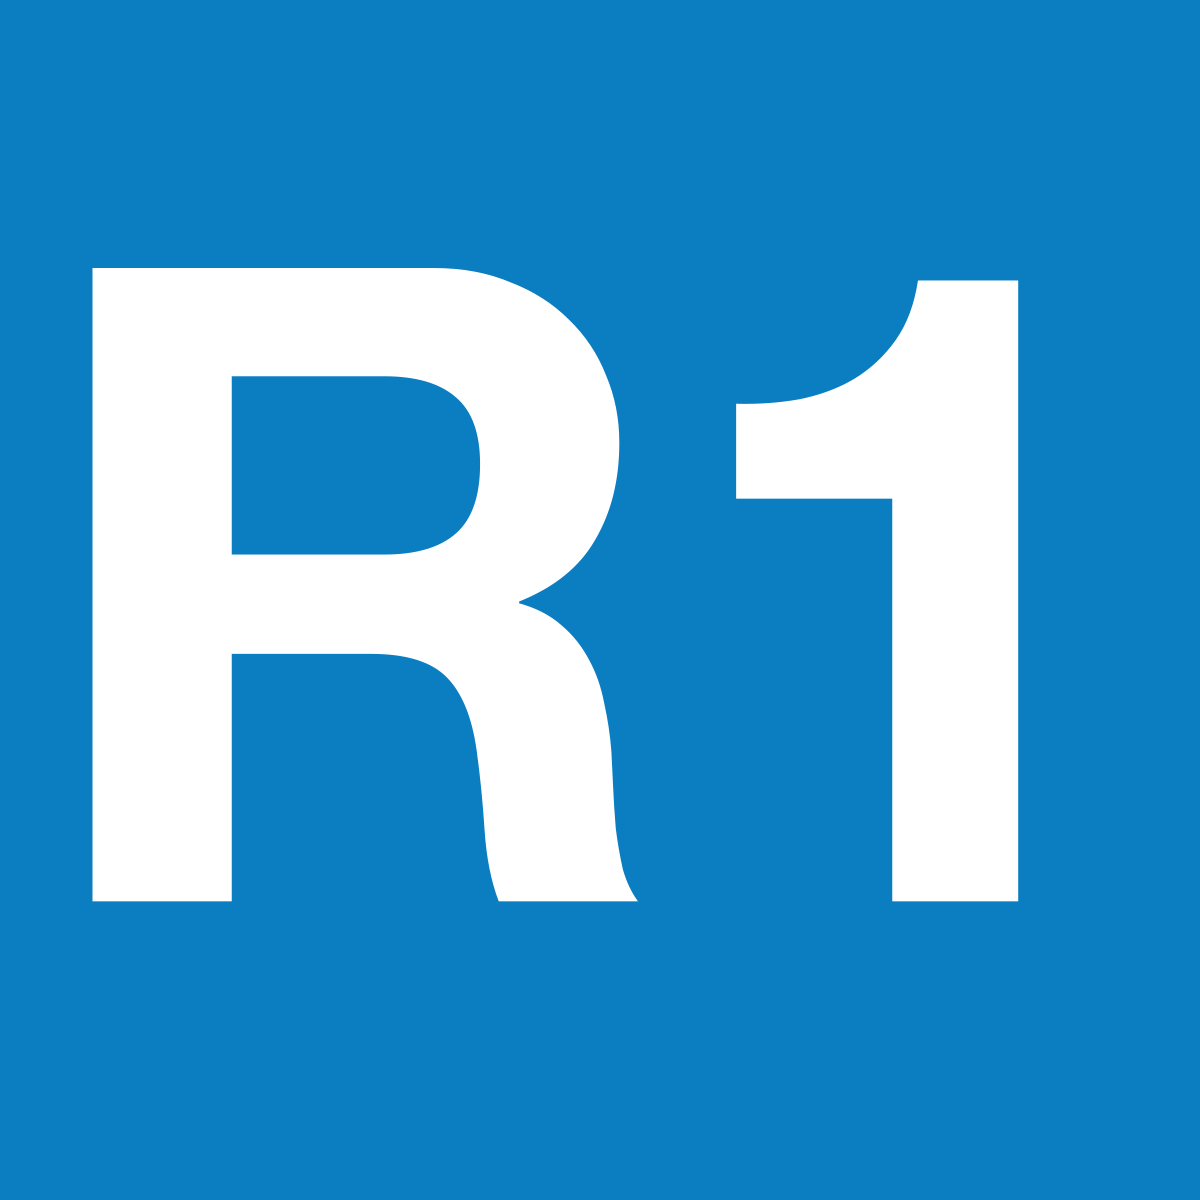 R1 Barcelona. Barcelona logo.